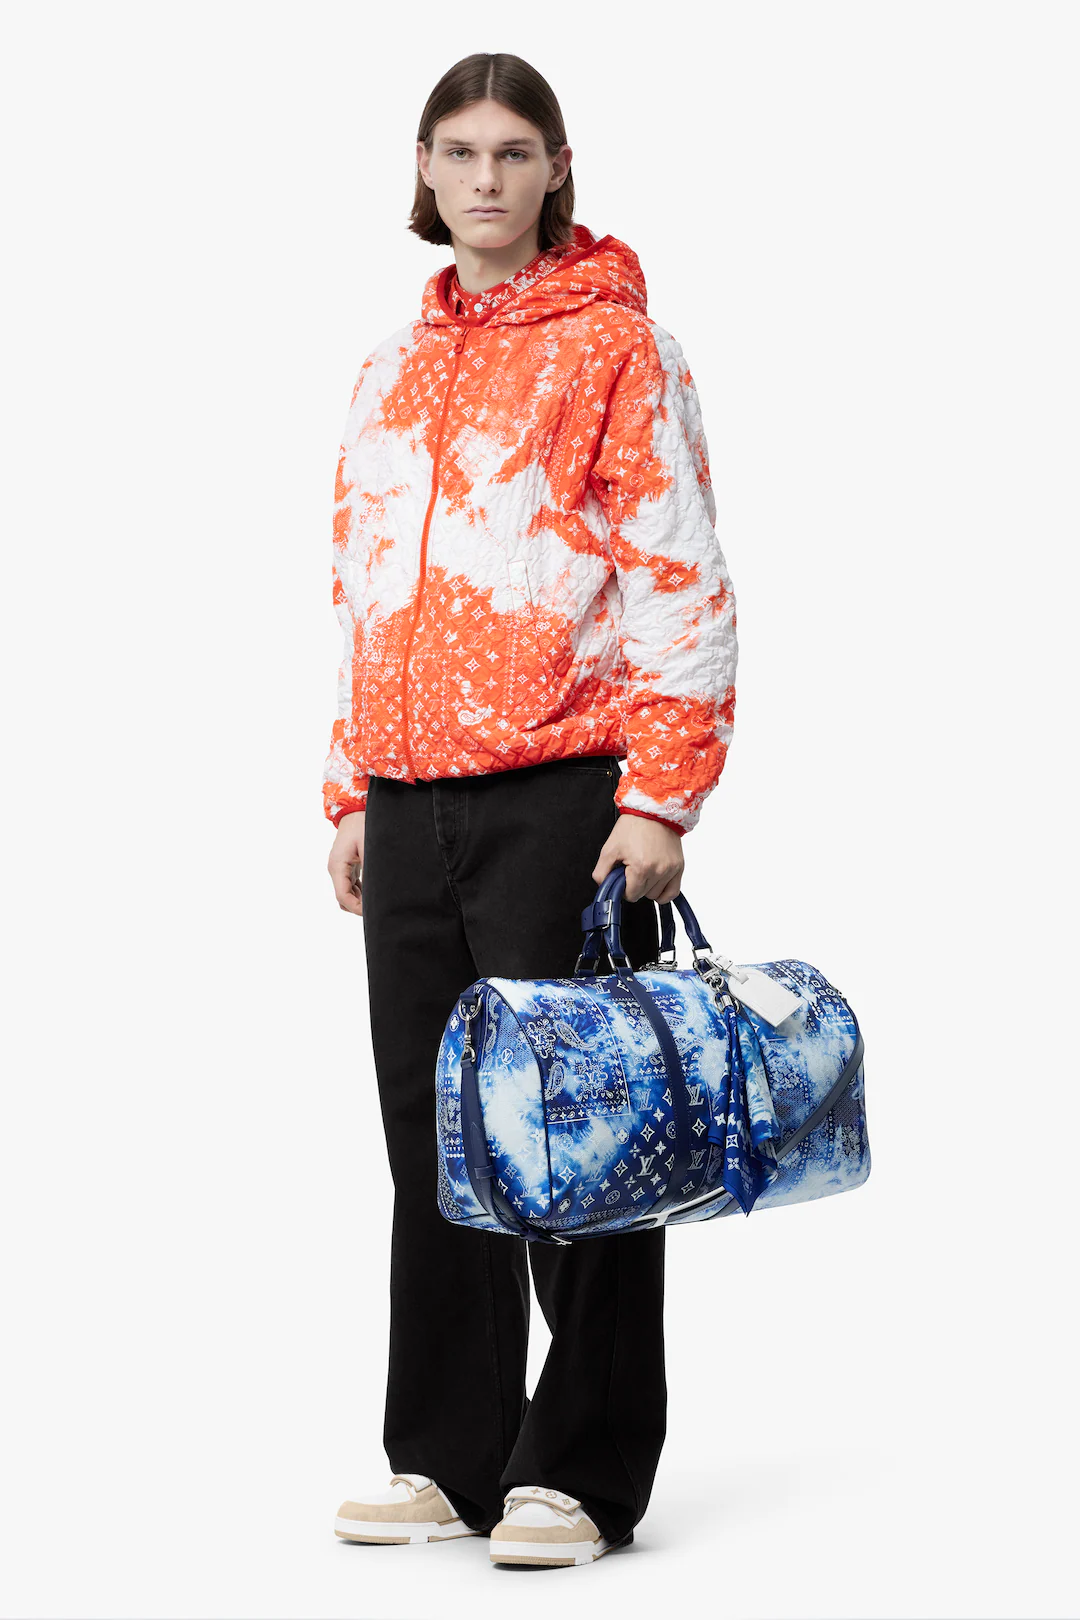 Louis Vuitton saca la colección definitiva para vestir como los que más  saben de moda este otoño